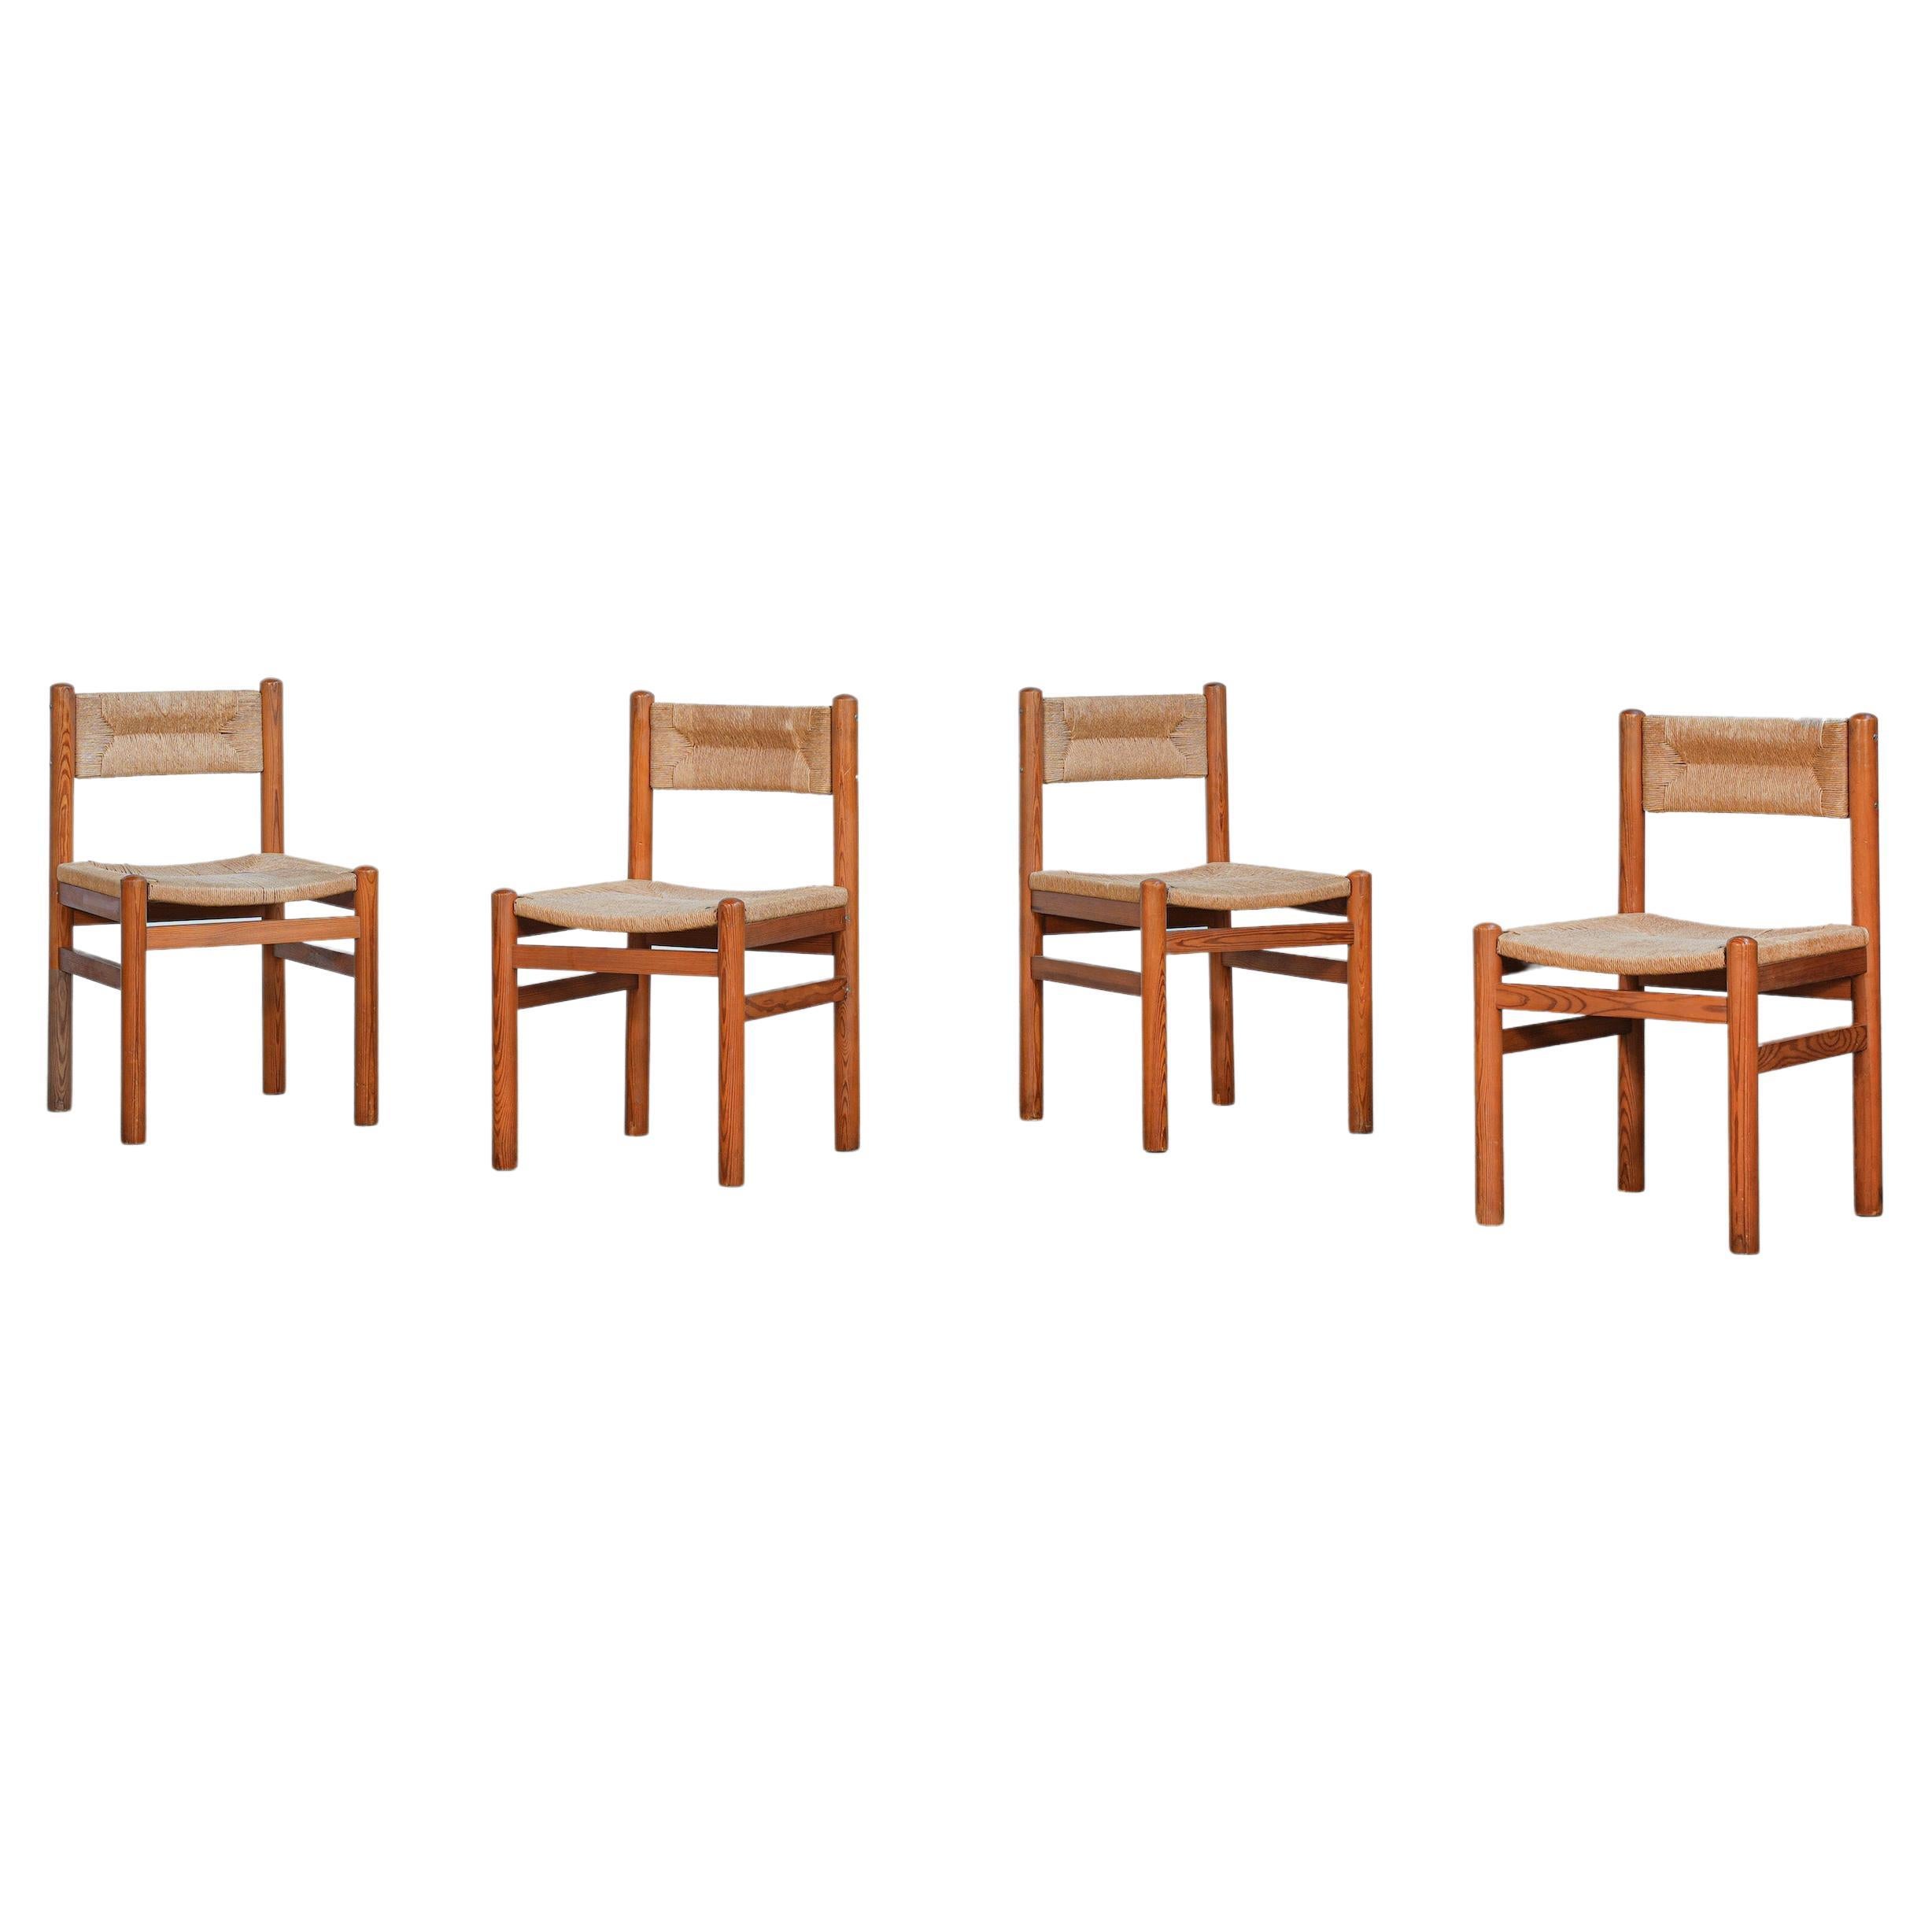 Seltener Satz von vier dänischen Kiefernholzstühlen im Stil von Charlotte Perriand, 1960er Jahre